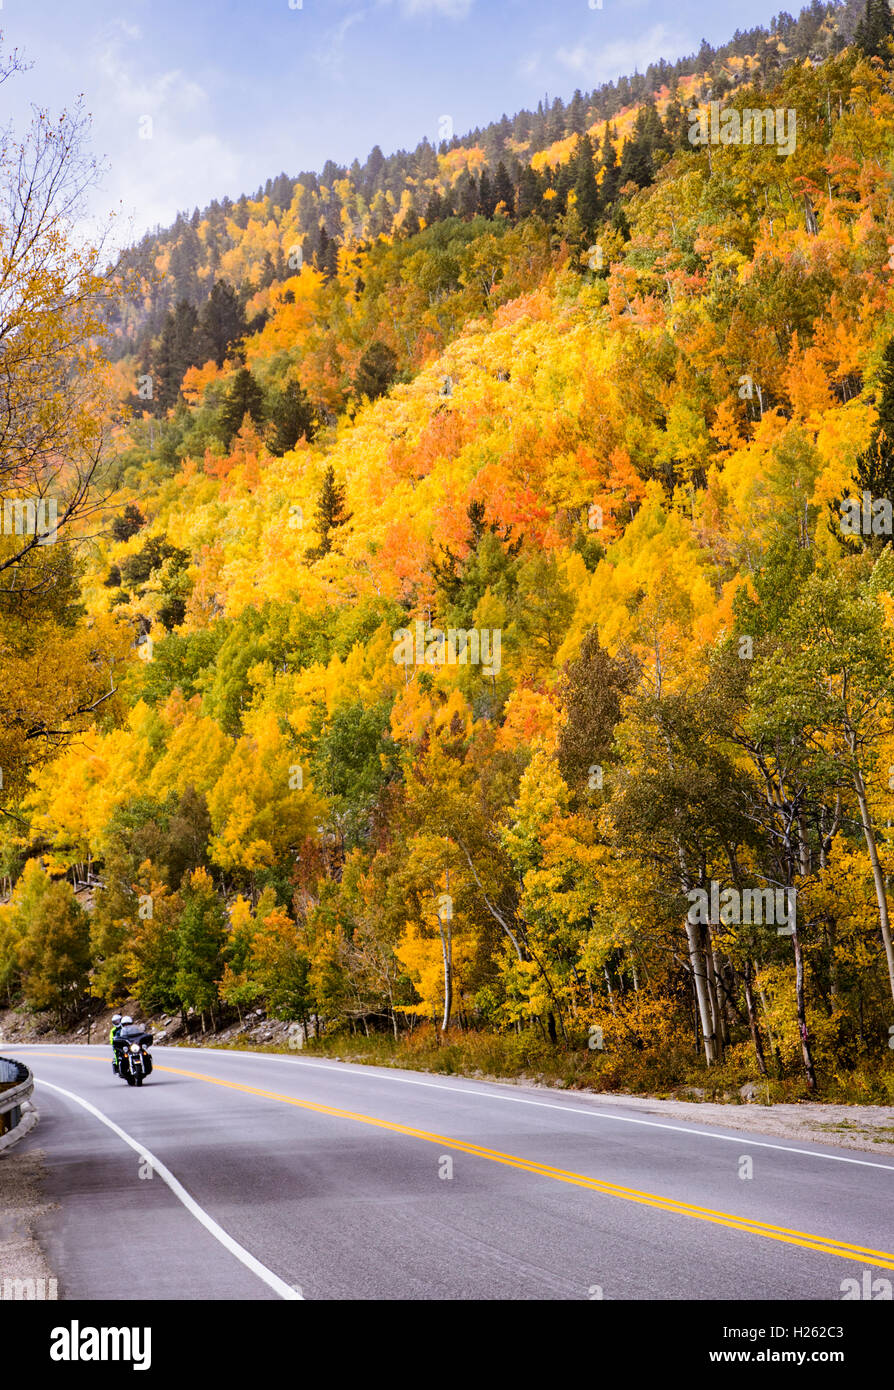 L'autoroute 50 sur moto USA & feuillage d'automne près de Monarch Pass ; le centre du Colorado, USA Banque D'Images